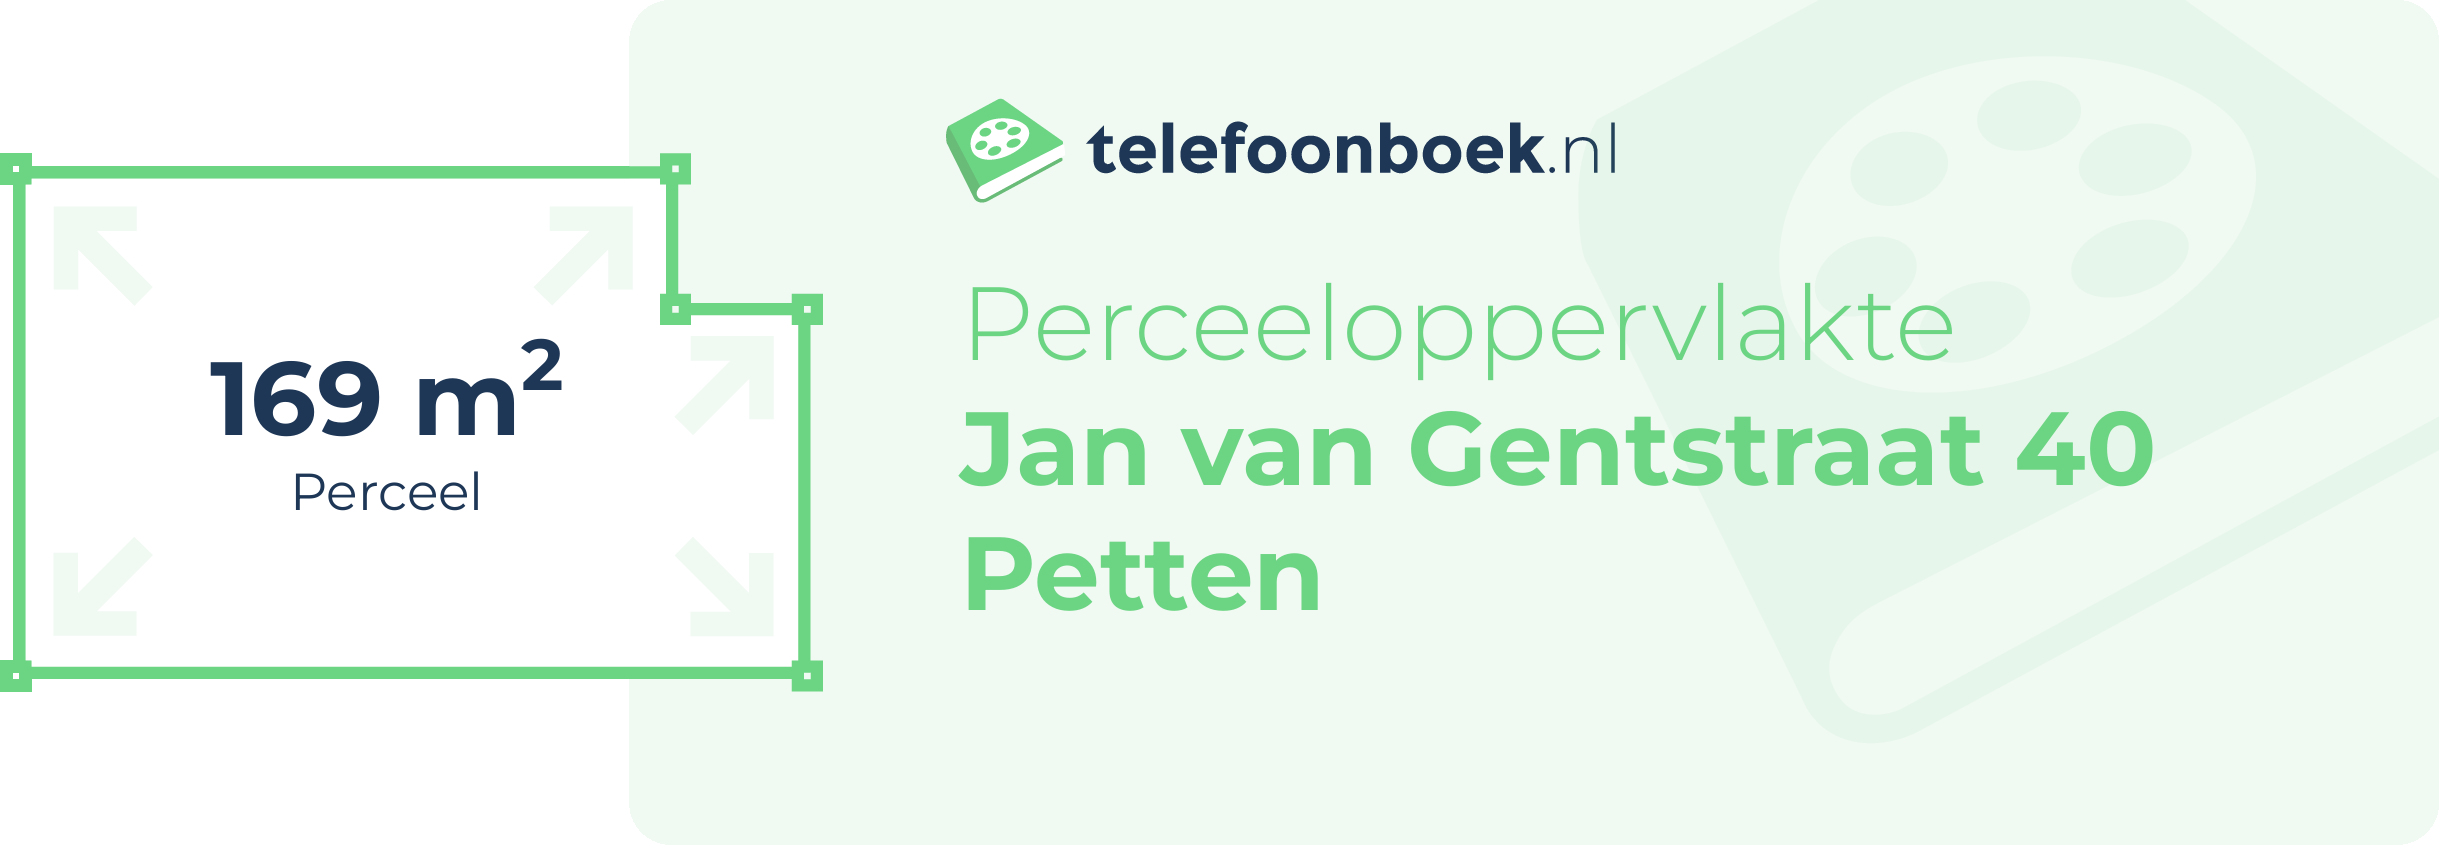 Perceeloppervlakte Jan Van Gentstraat 40 Petten